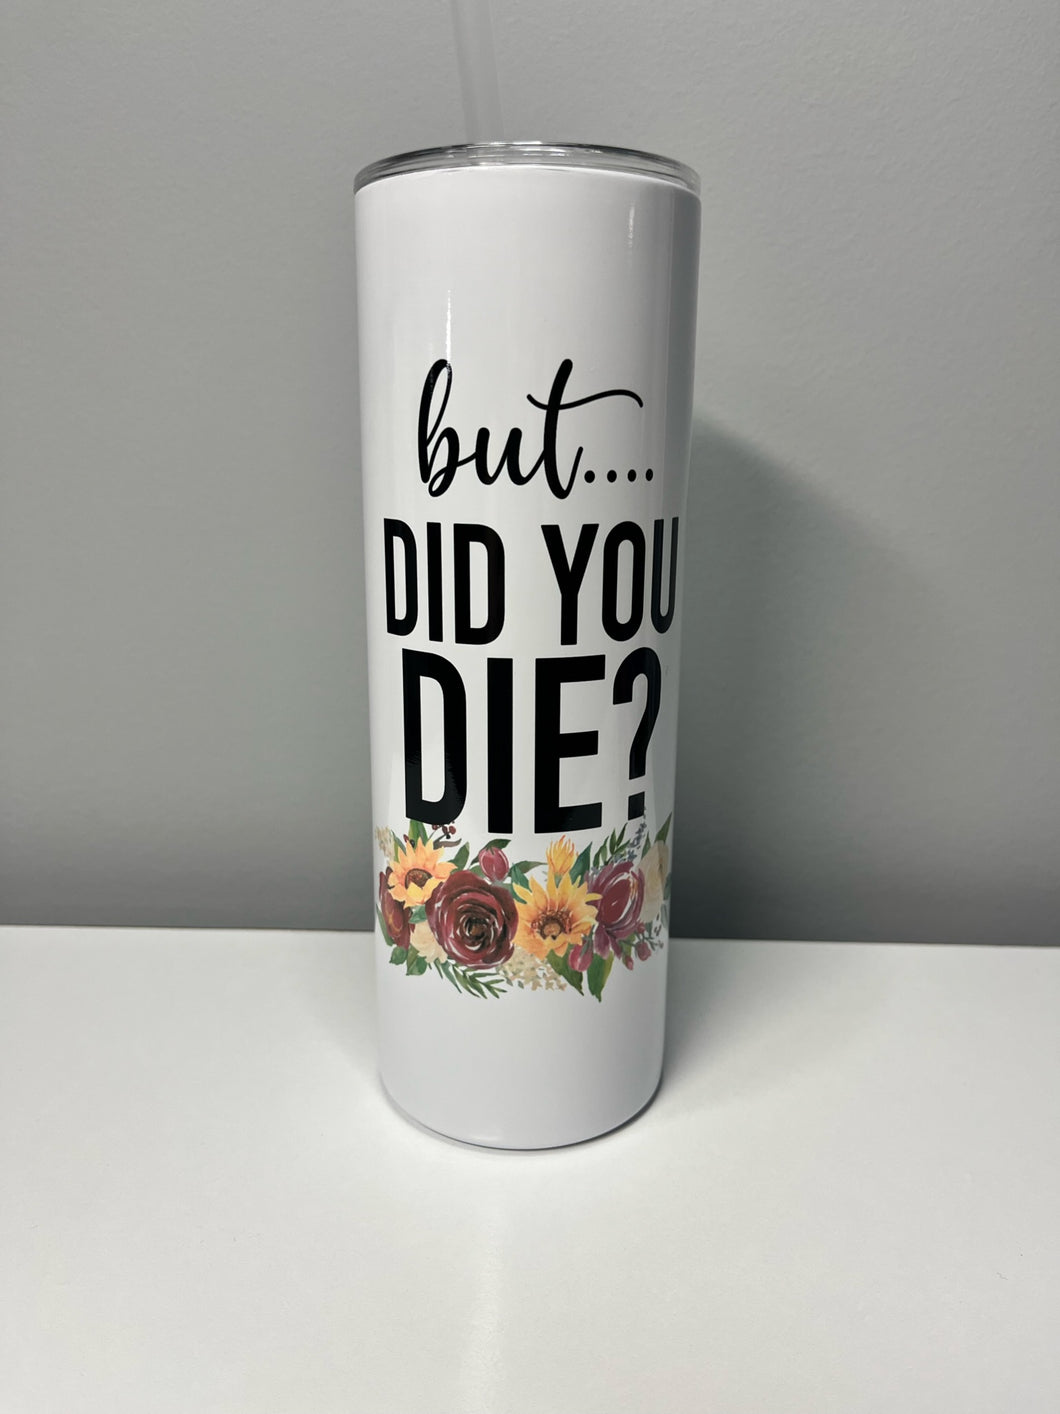 Did you die?